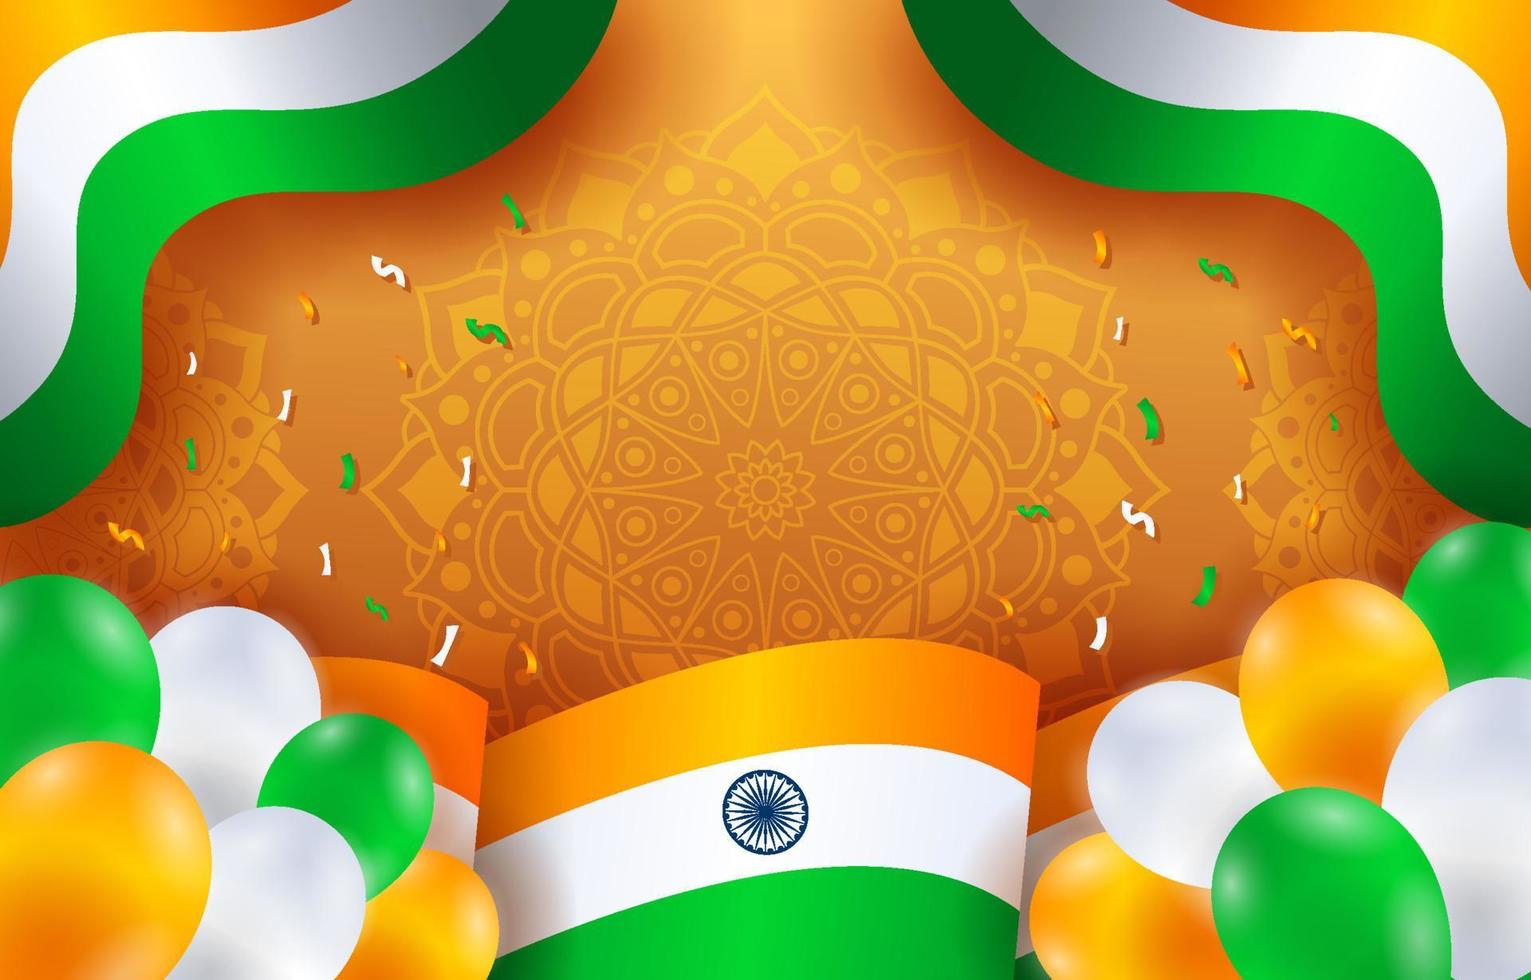 Indien självständighetsdagen festlighet bakgrund vektor